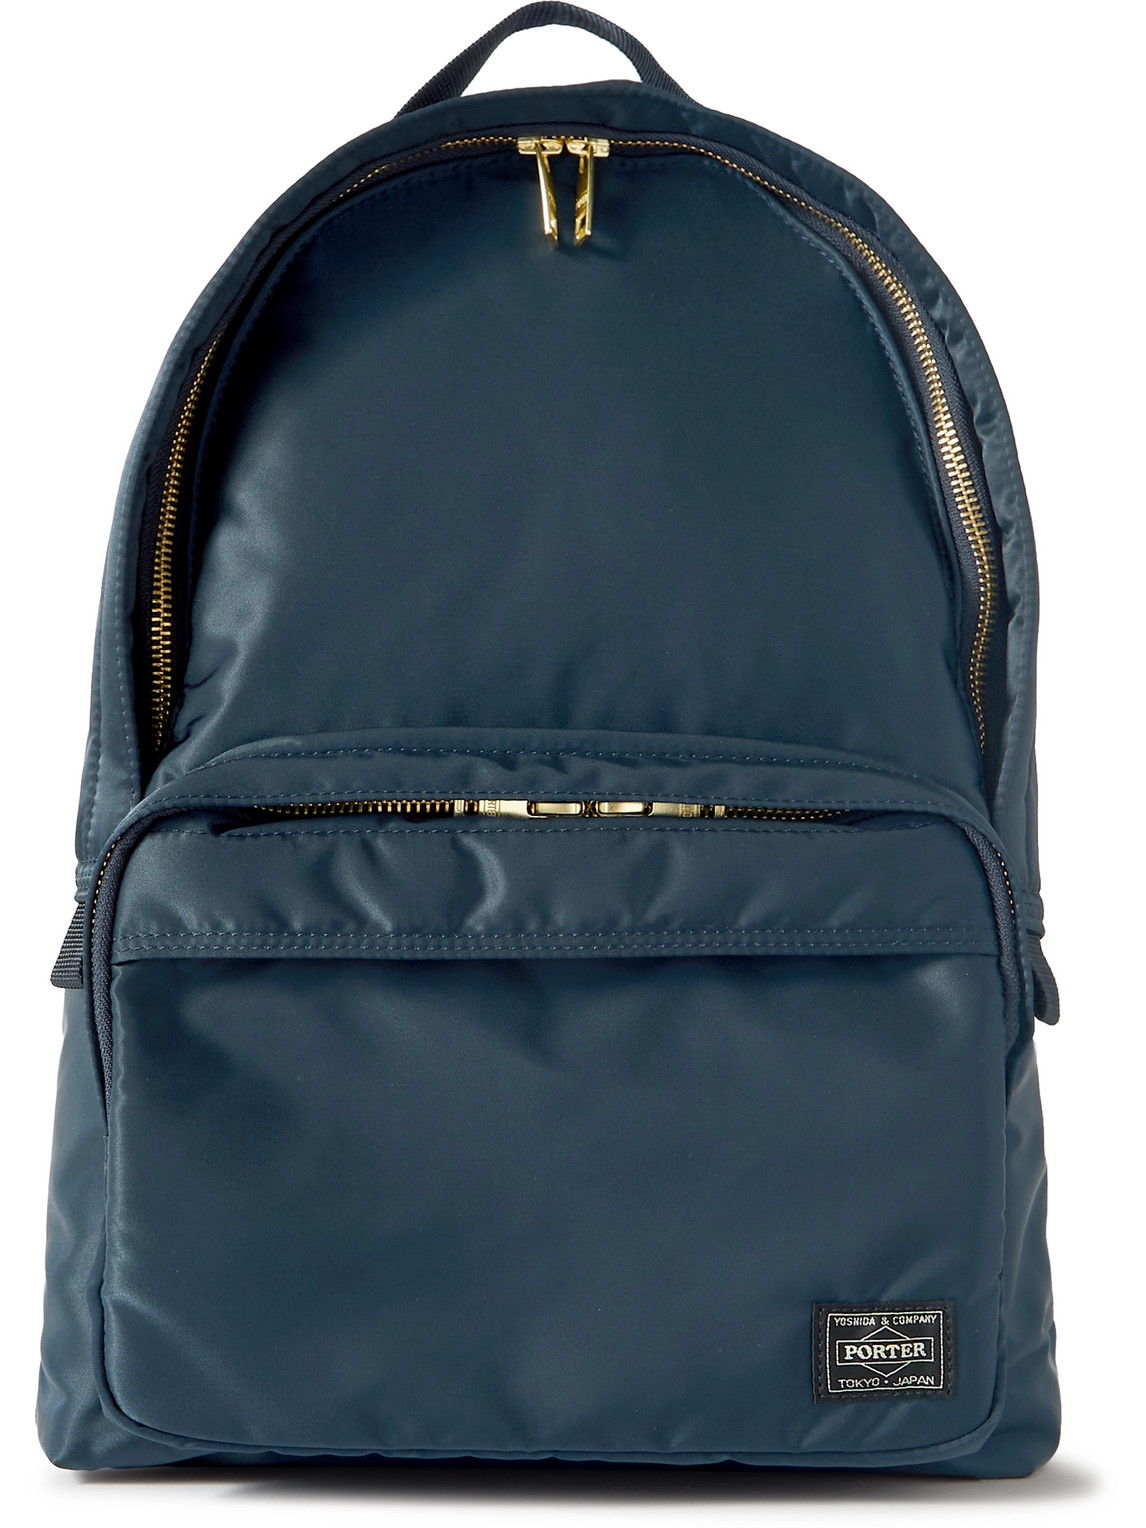 Porter, Yoshida & Co Tanker Nylon Backpack In Blue